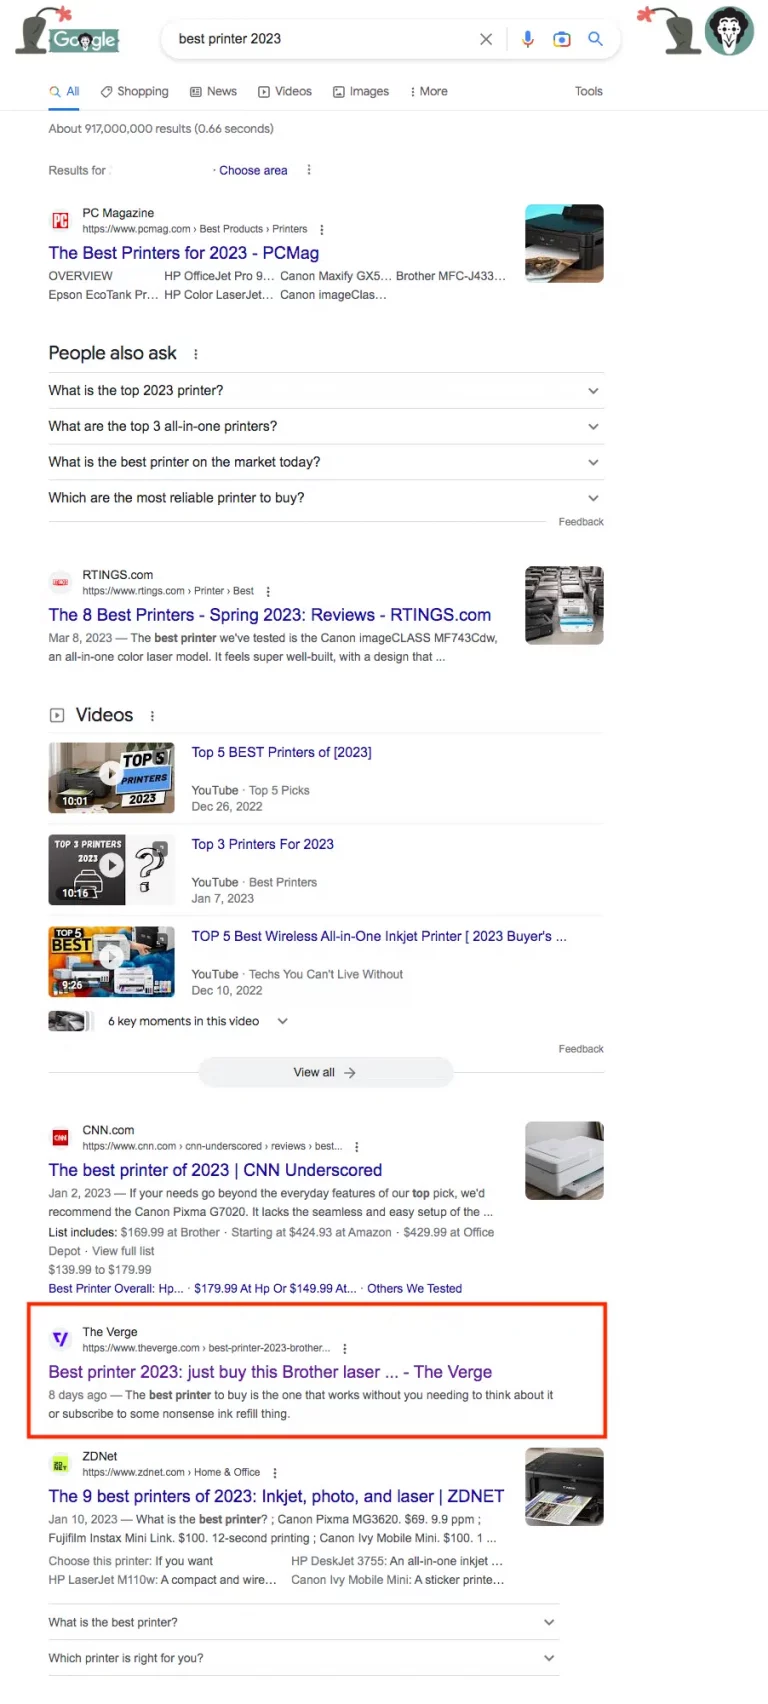 best-printer-2023-google Search engine journal